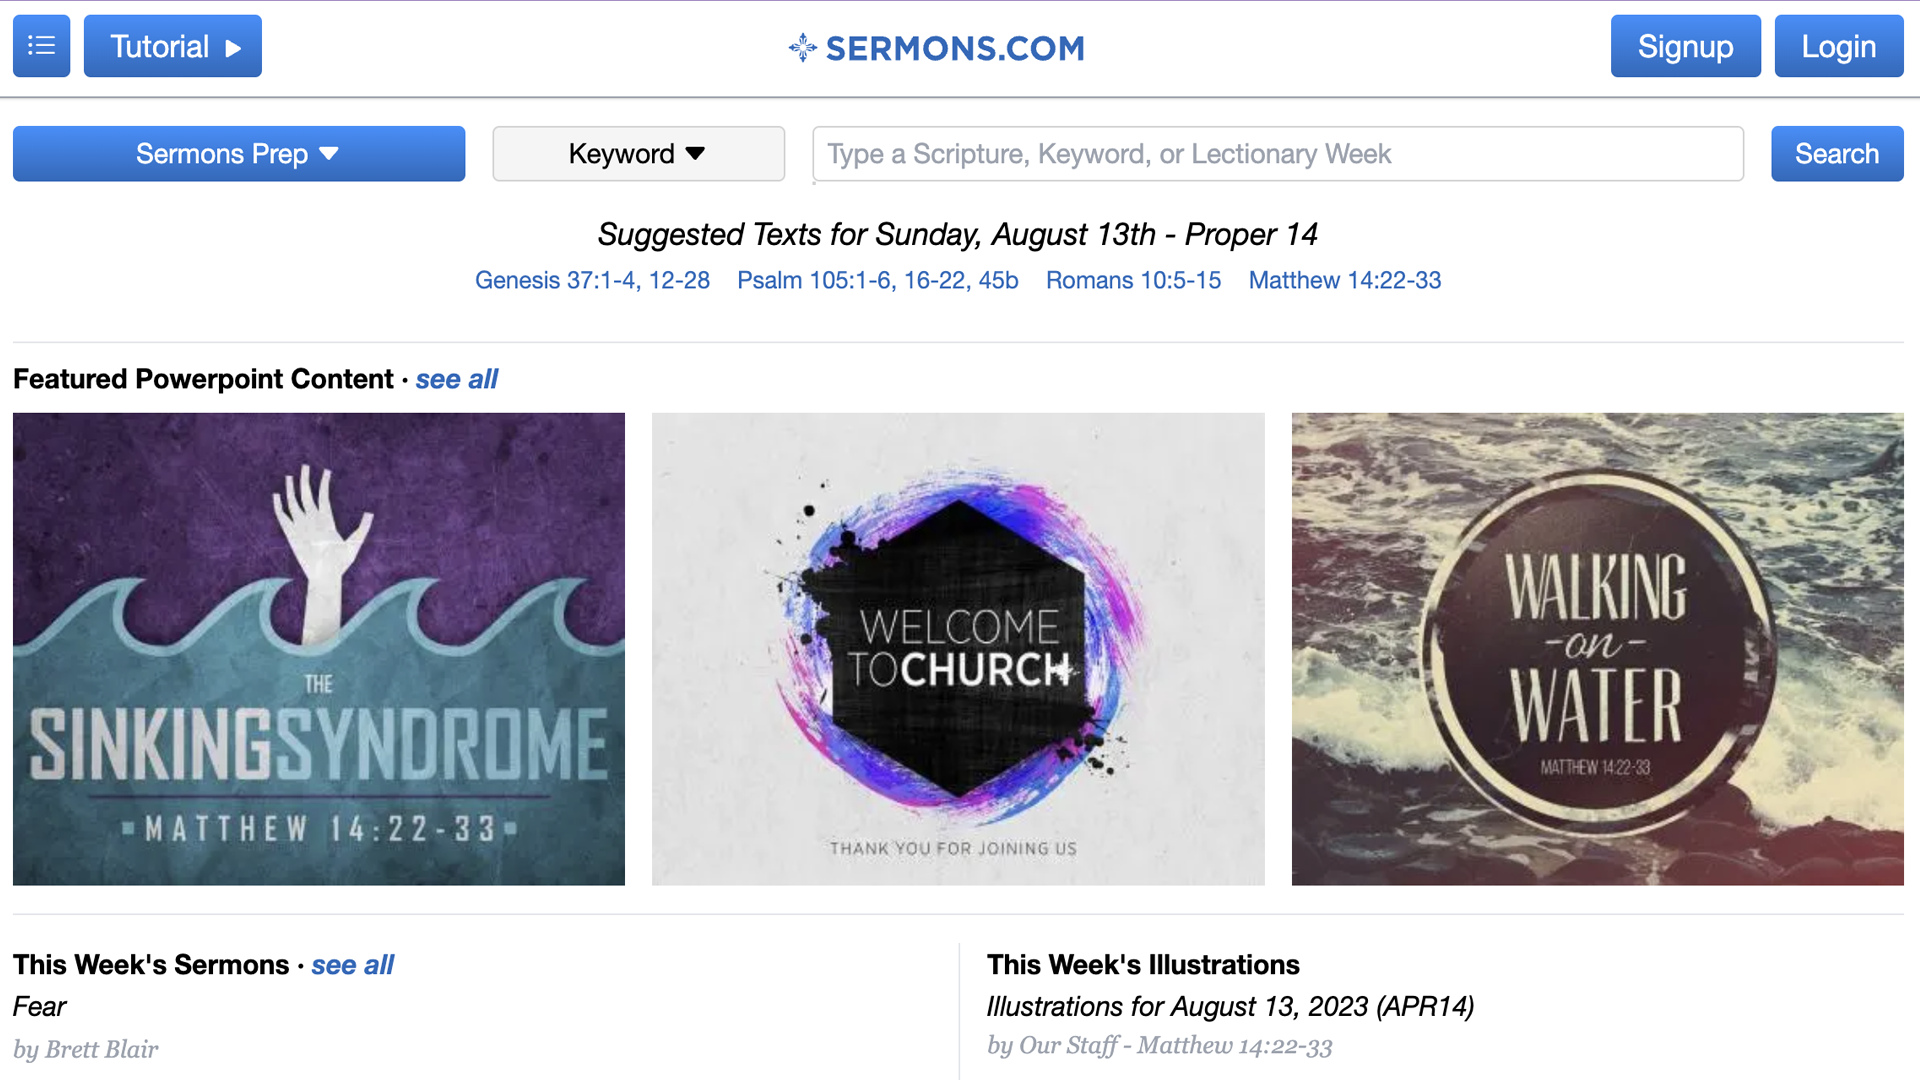 Sermons.com